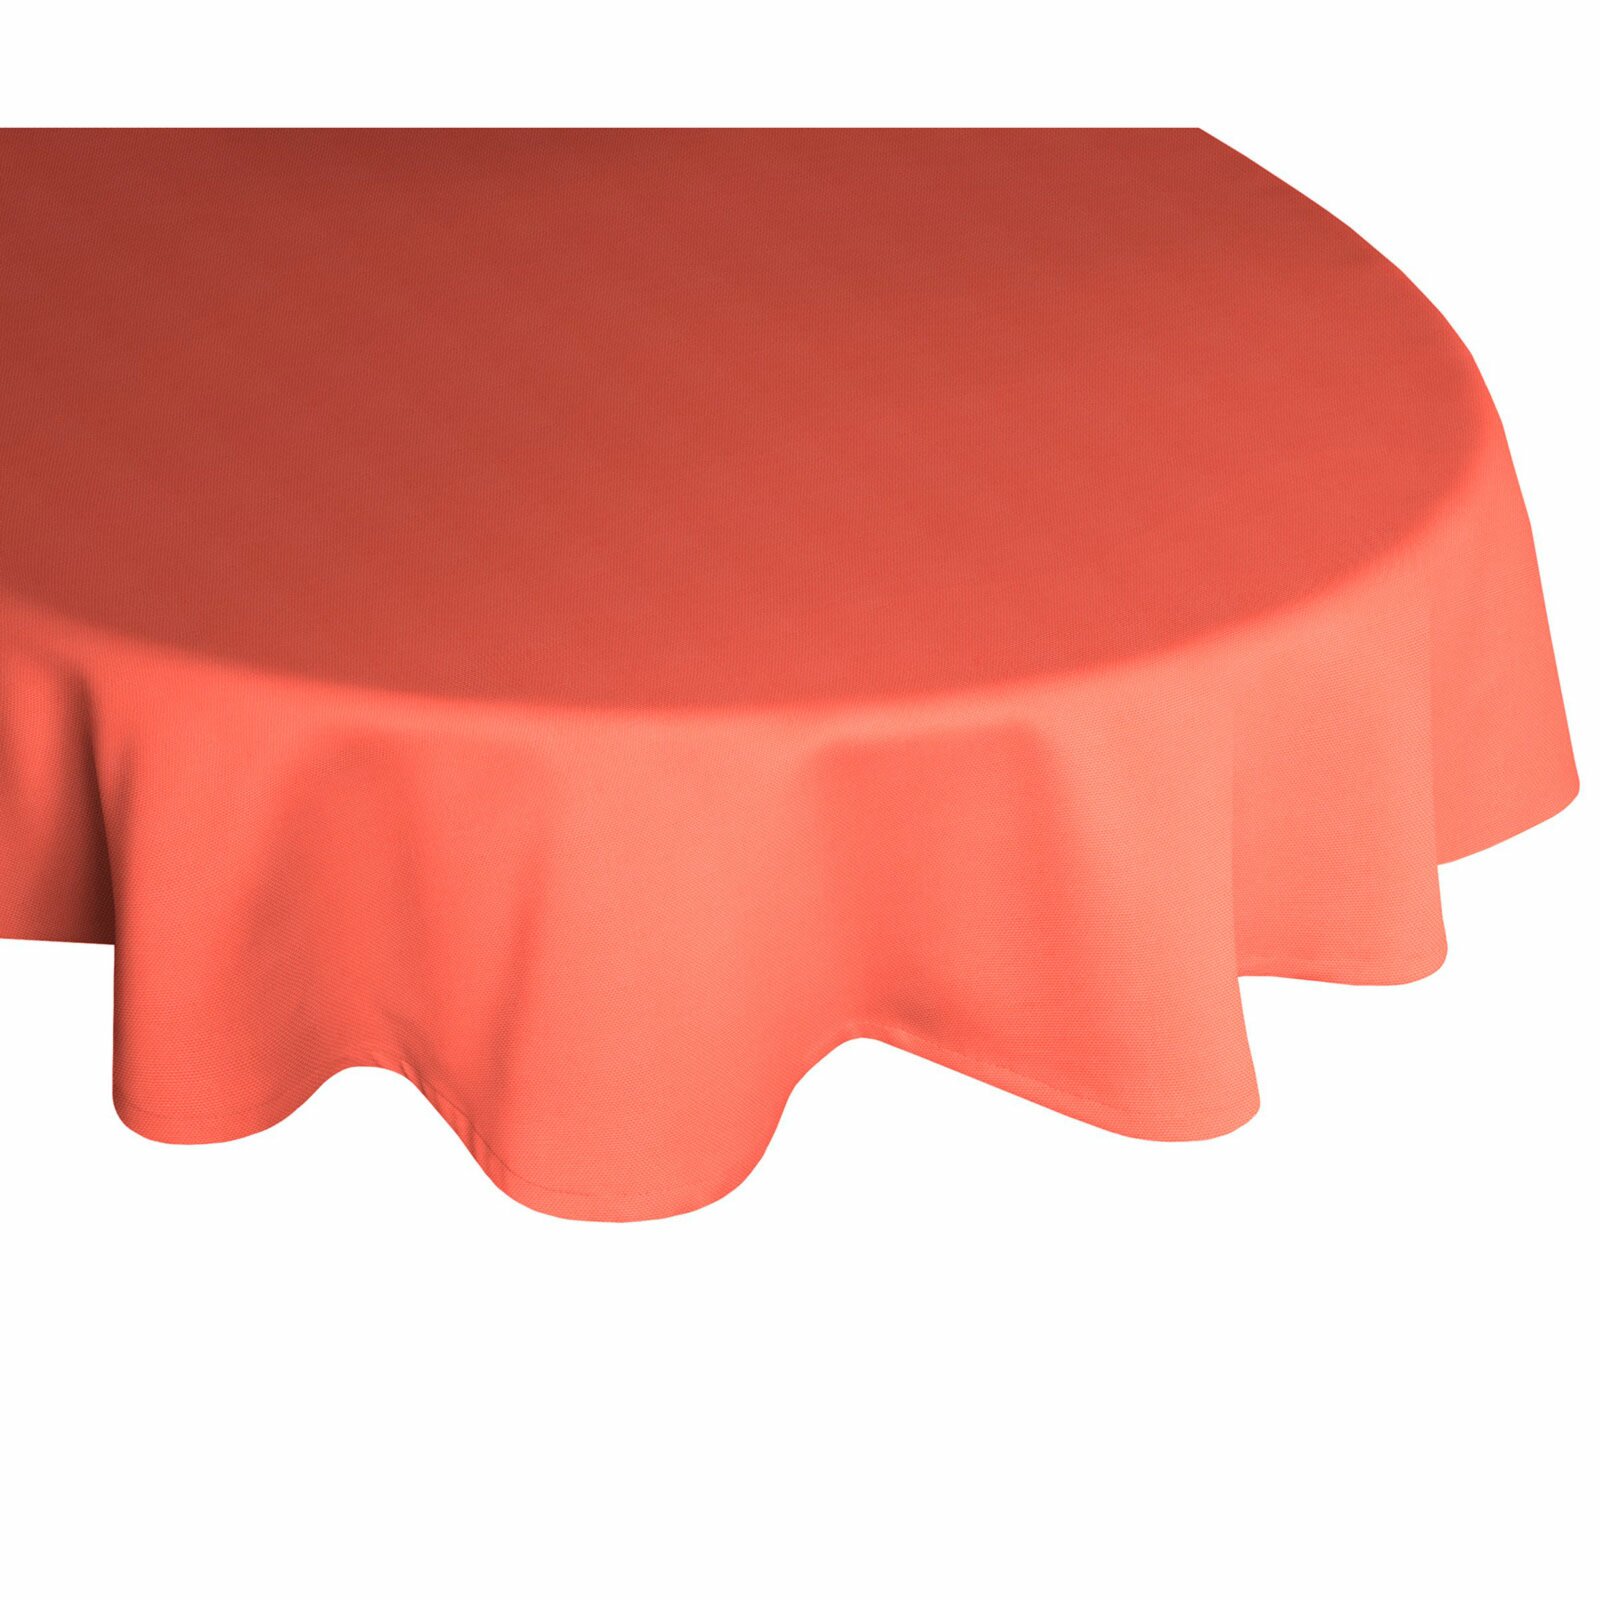 Tischdecke WIRTHNATUR - rot - oval - mit U-Saum | eBay